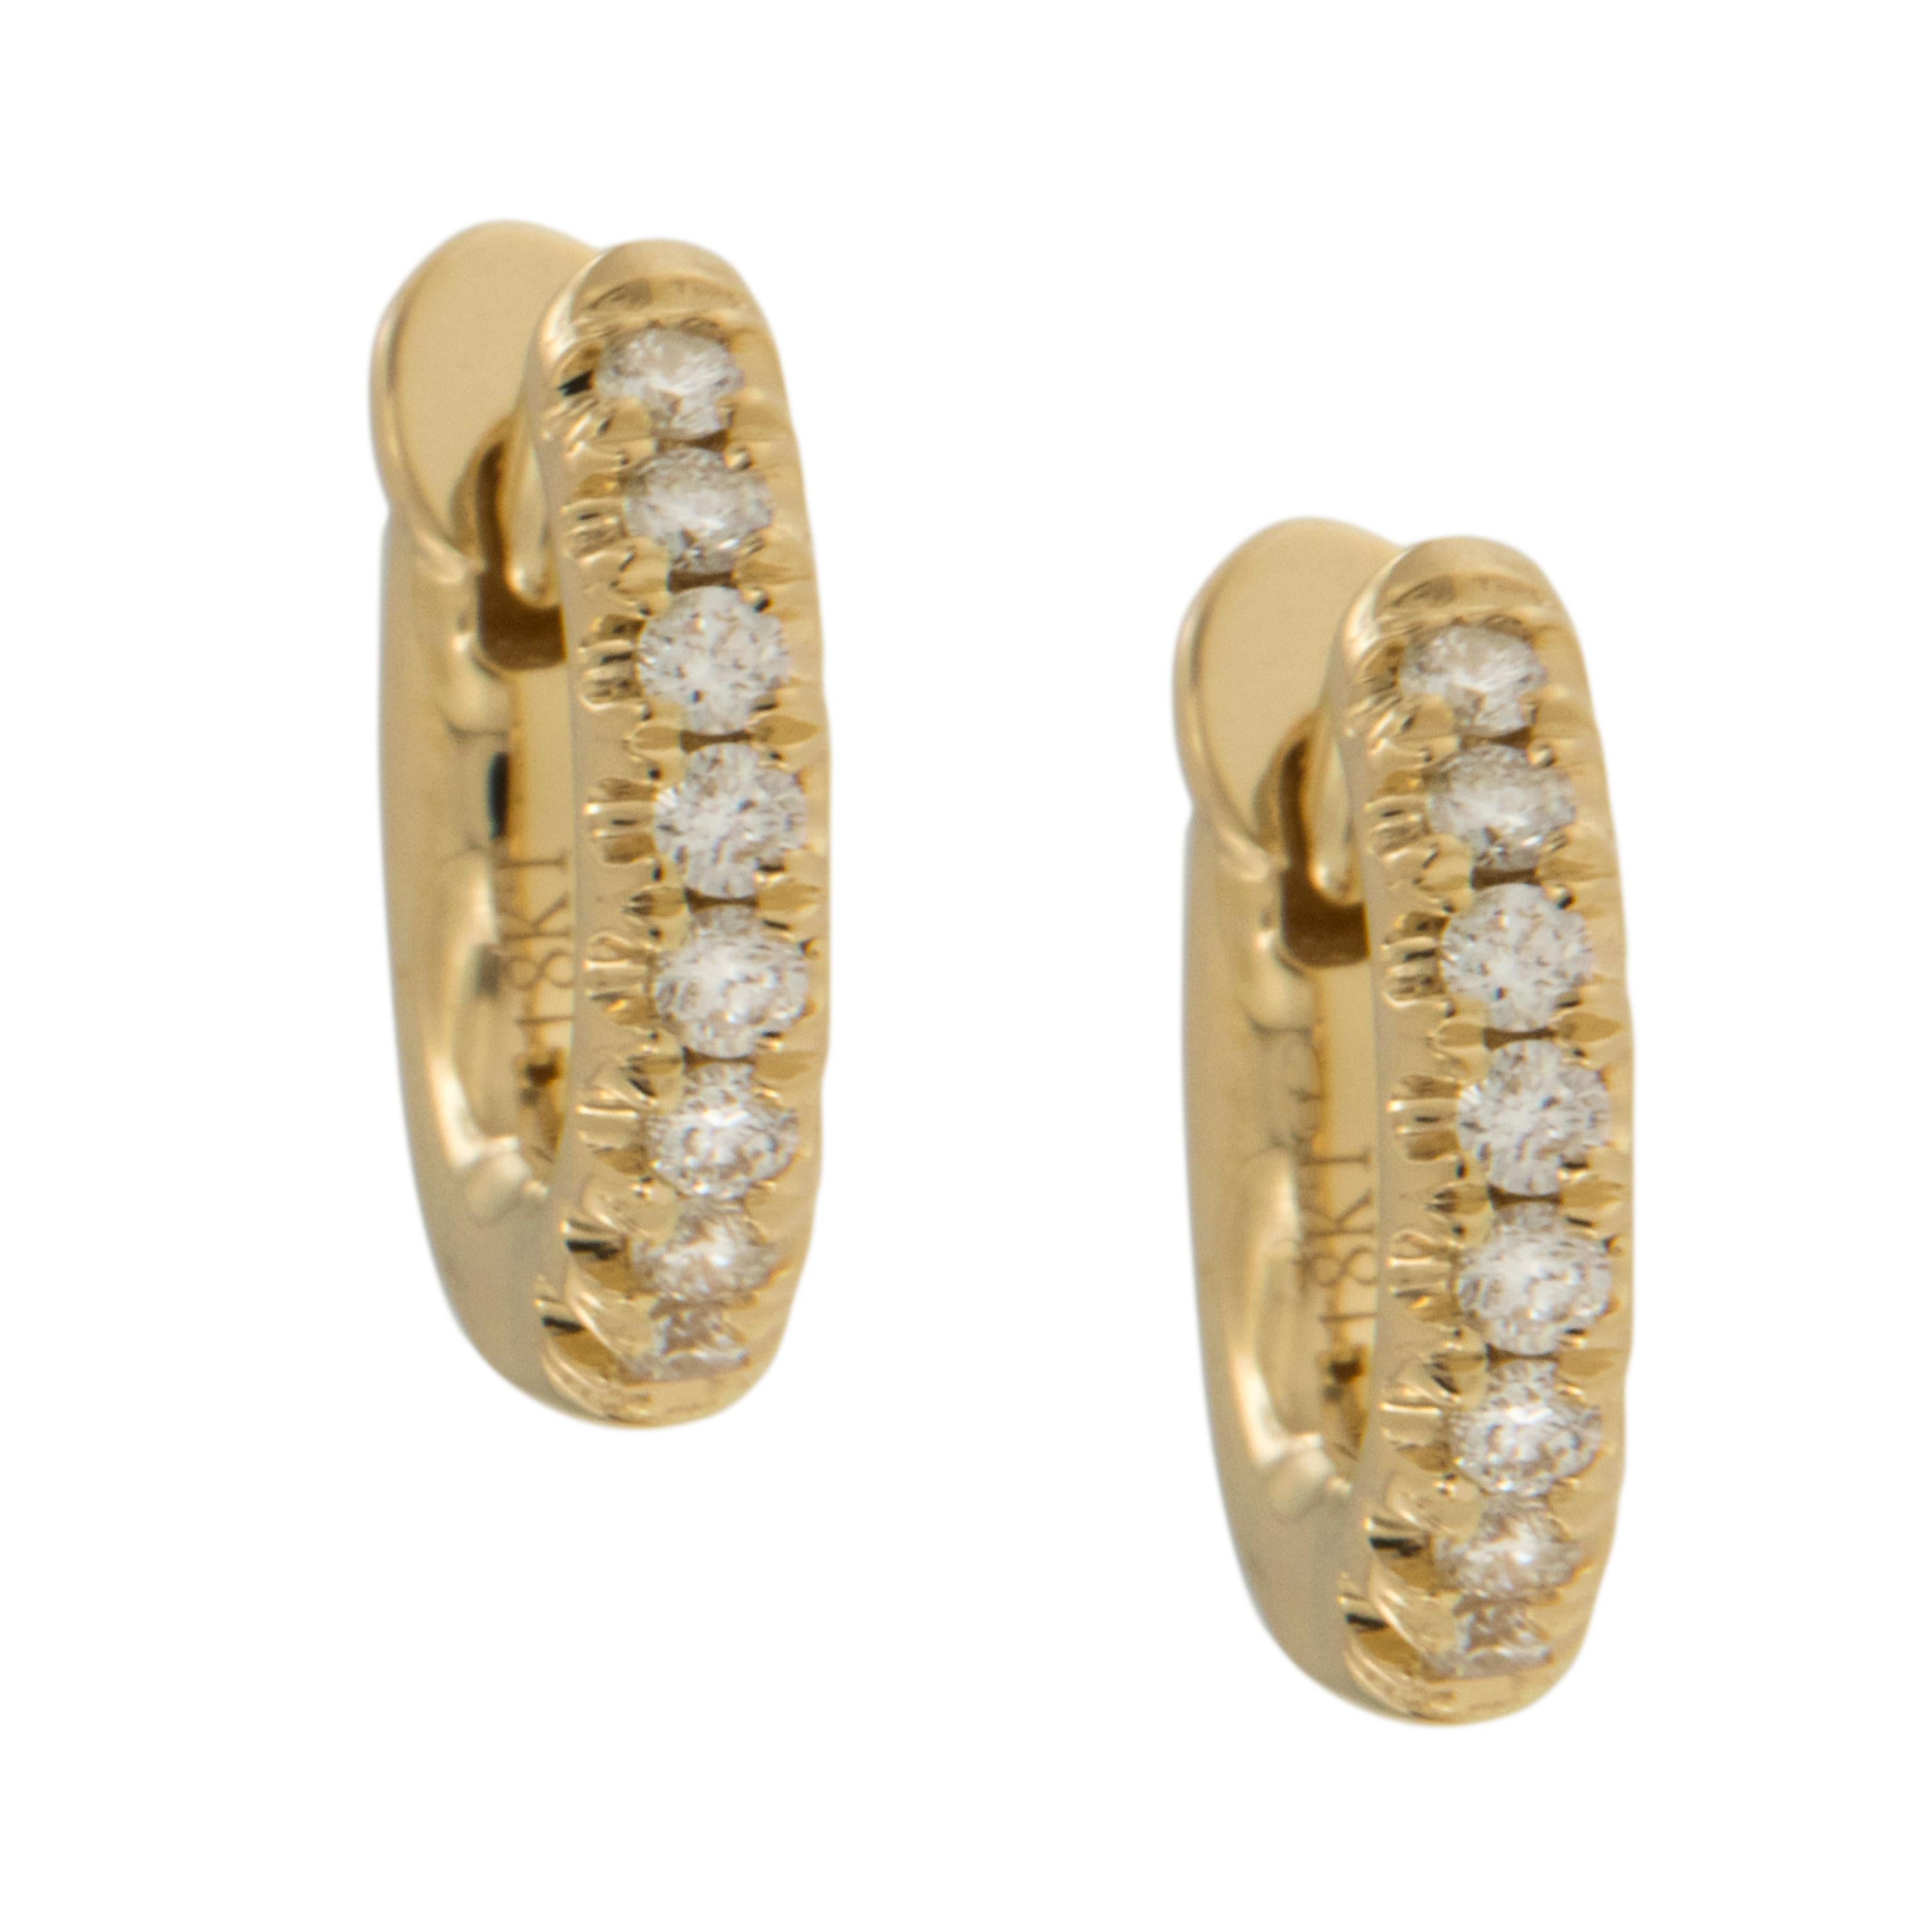 Wie bezaubernd sind diese Diamant-Ohrringe? Perfekt für den Alltag oder das Büro, vor allem, weil die Rückseite nicht in den Nacken sticht! Diese Mini-Diamant-Reifen aus königlichem 18-karätigem Gelbgold sind mit 0,12 Karat Diamanten besetzt. Sie